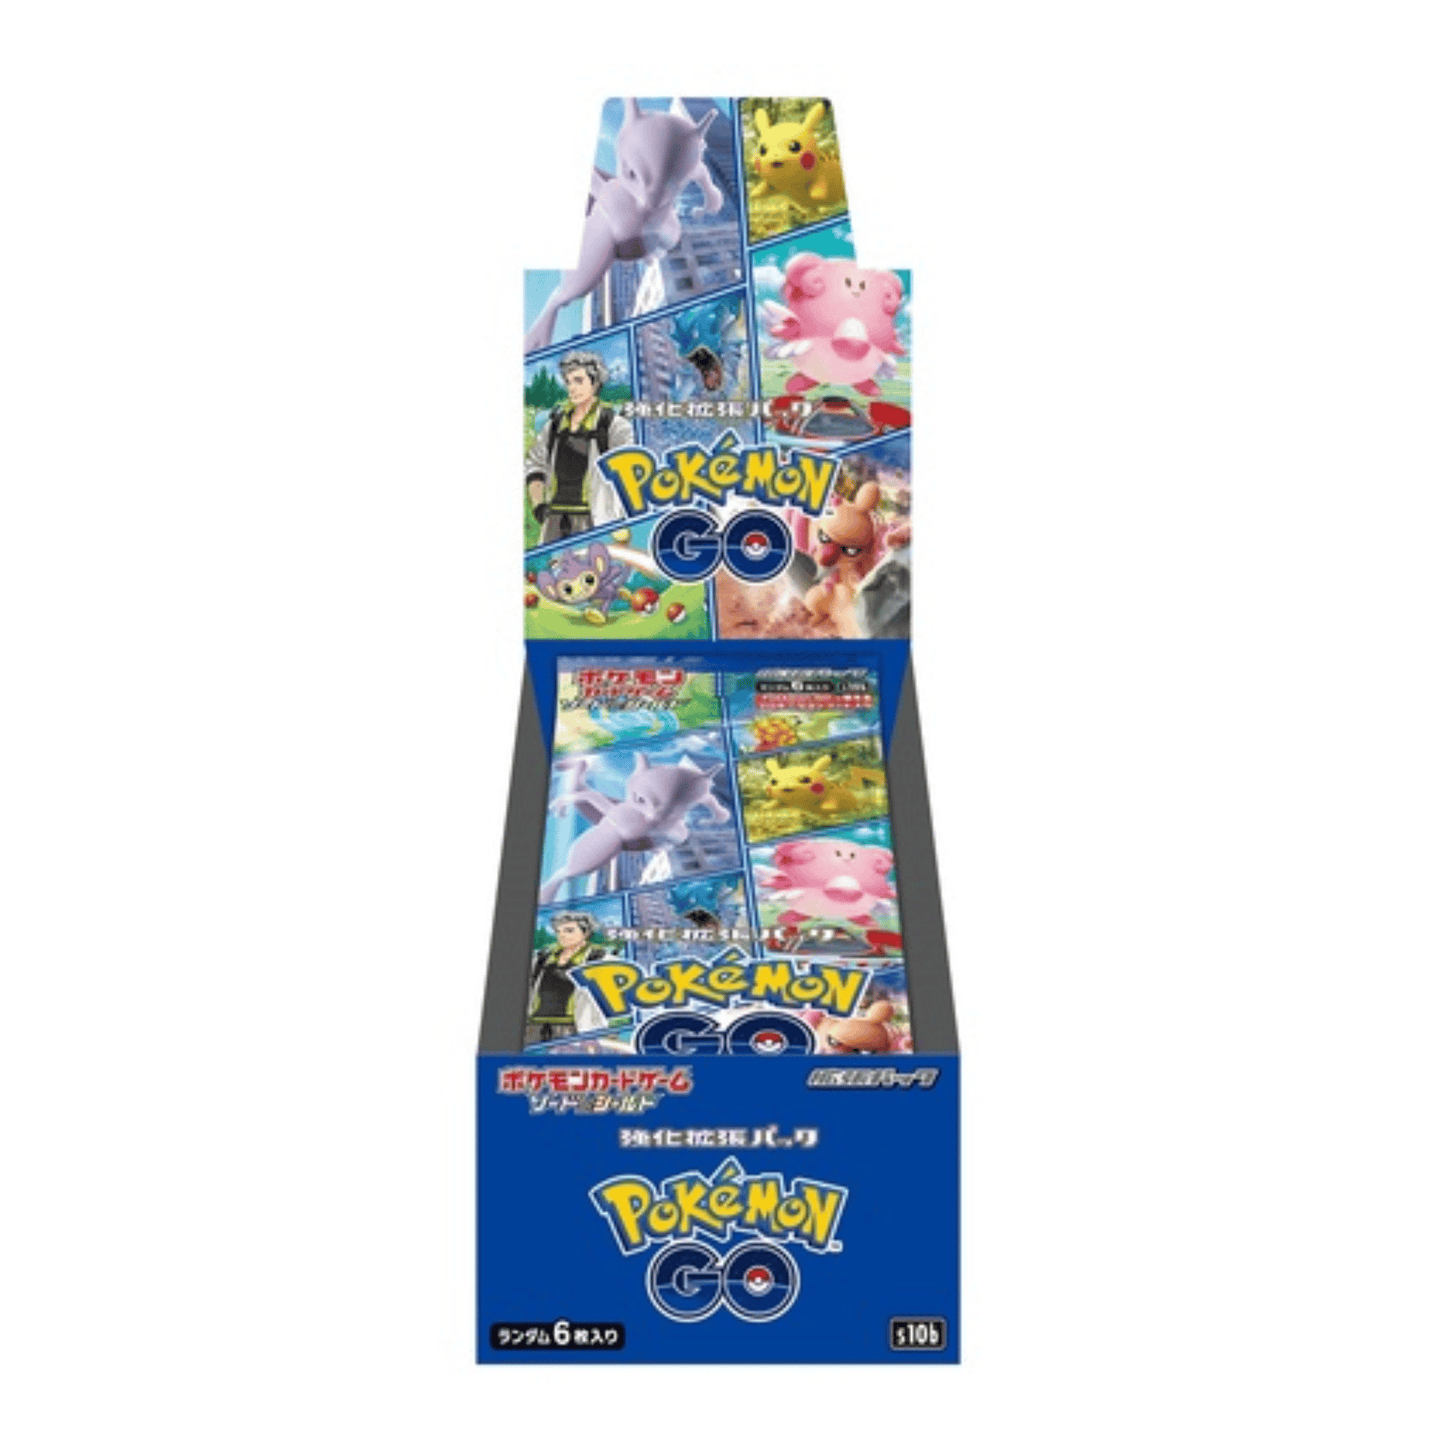 Pokémon Ir s10b | Caja de refuerzo / Pantalla